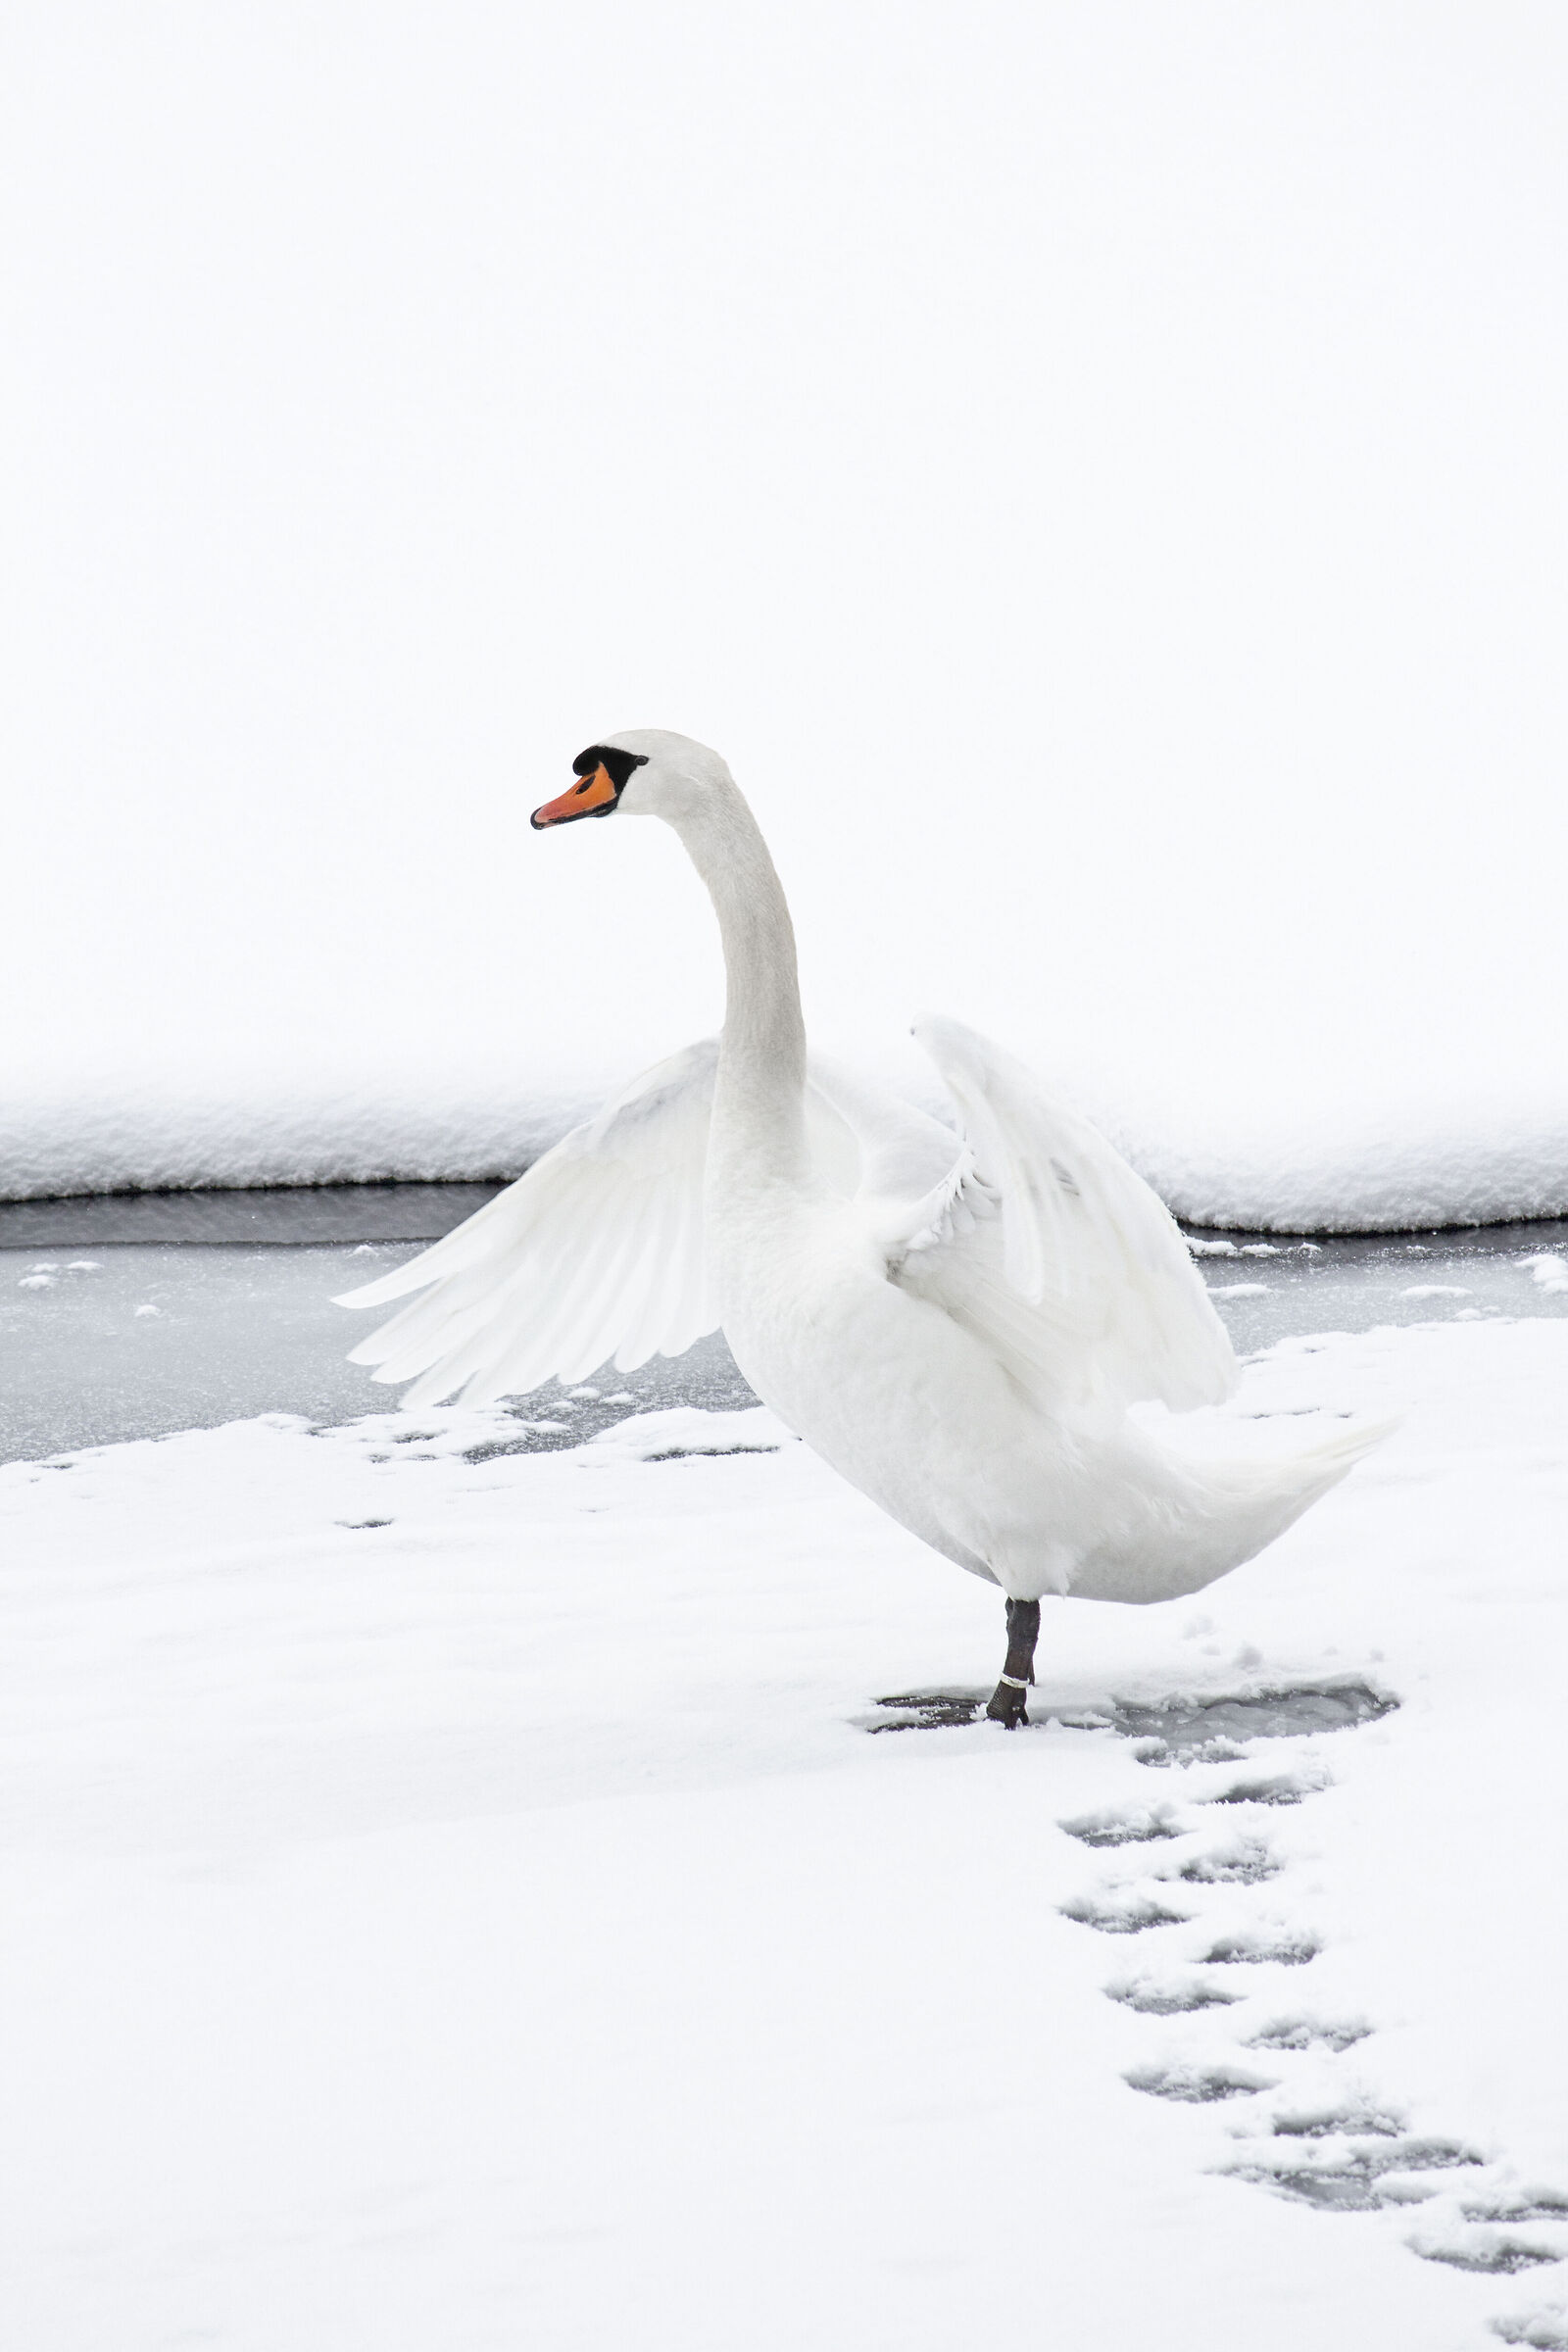 The Swan of Valdurna...